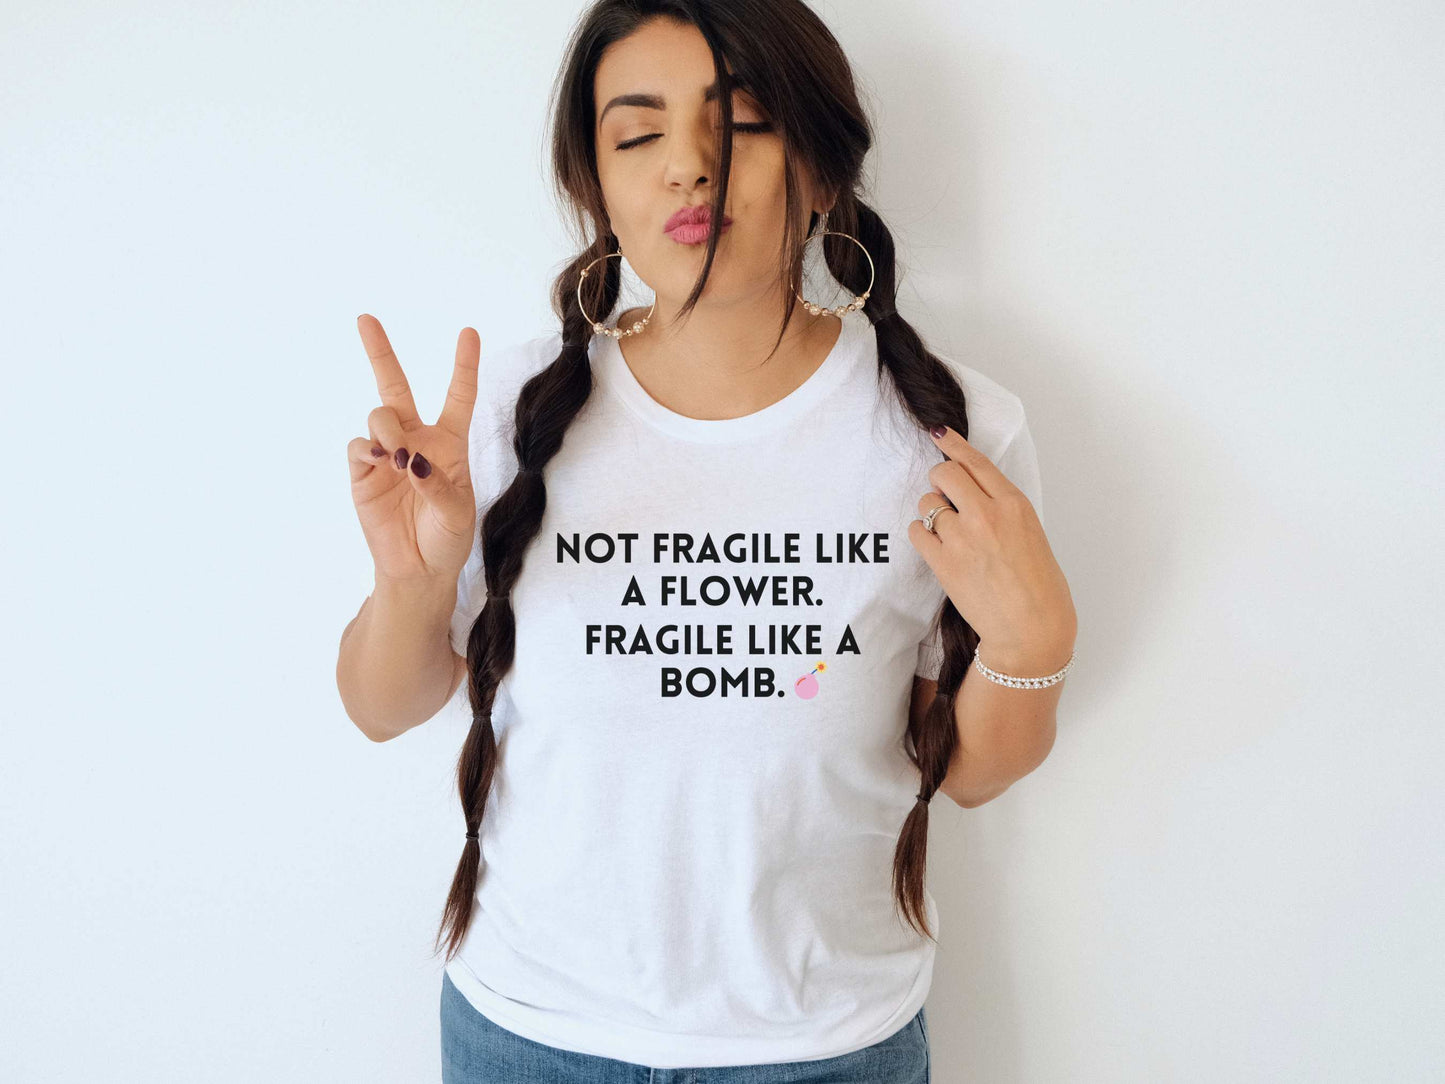 Fragile Like a Bomb Frida Kahlo T-Shirt in White